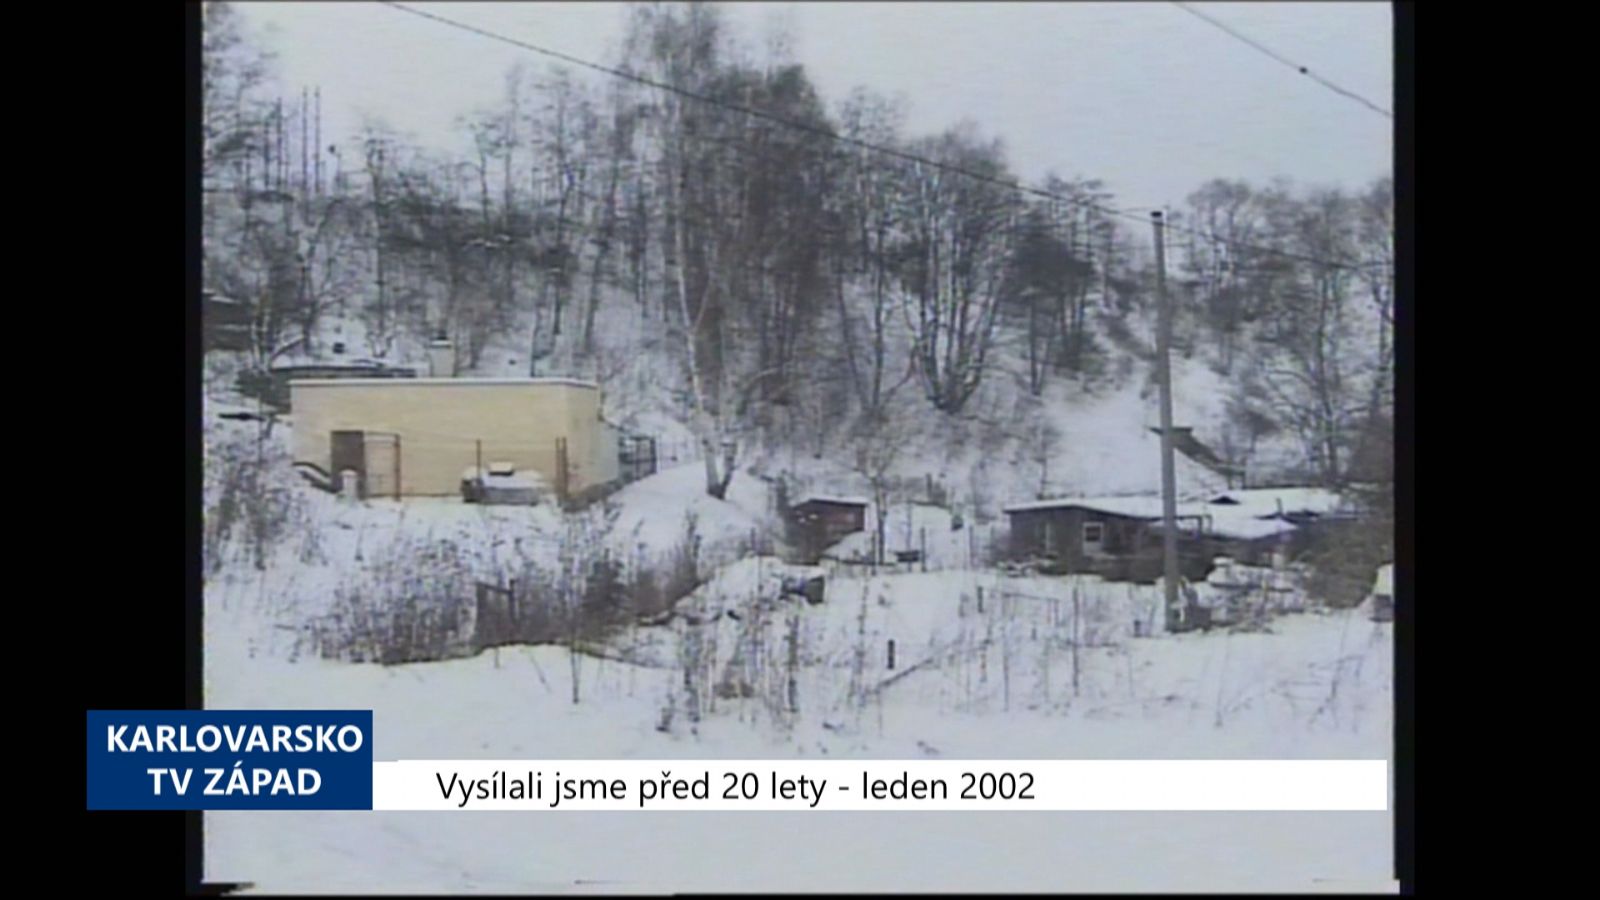 2002 – Cheb: Za viaduktem má vzniknout 96 malometrážních bytů (TV Západ)